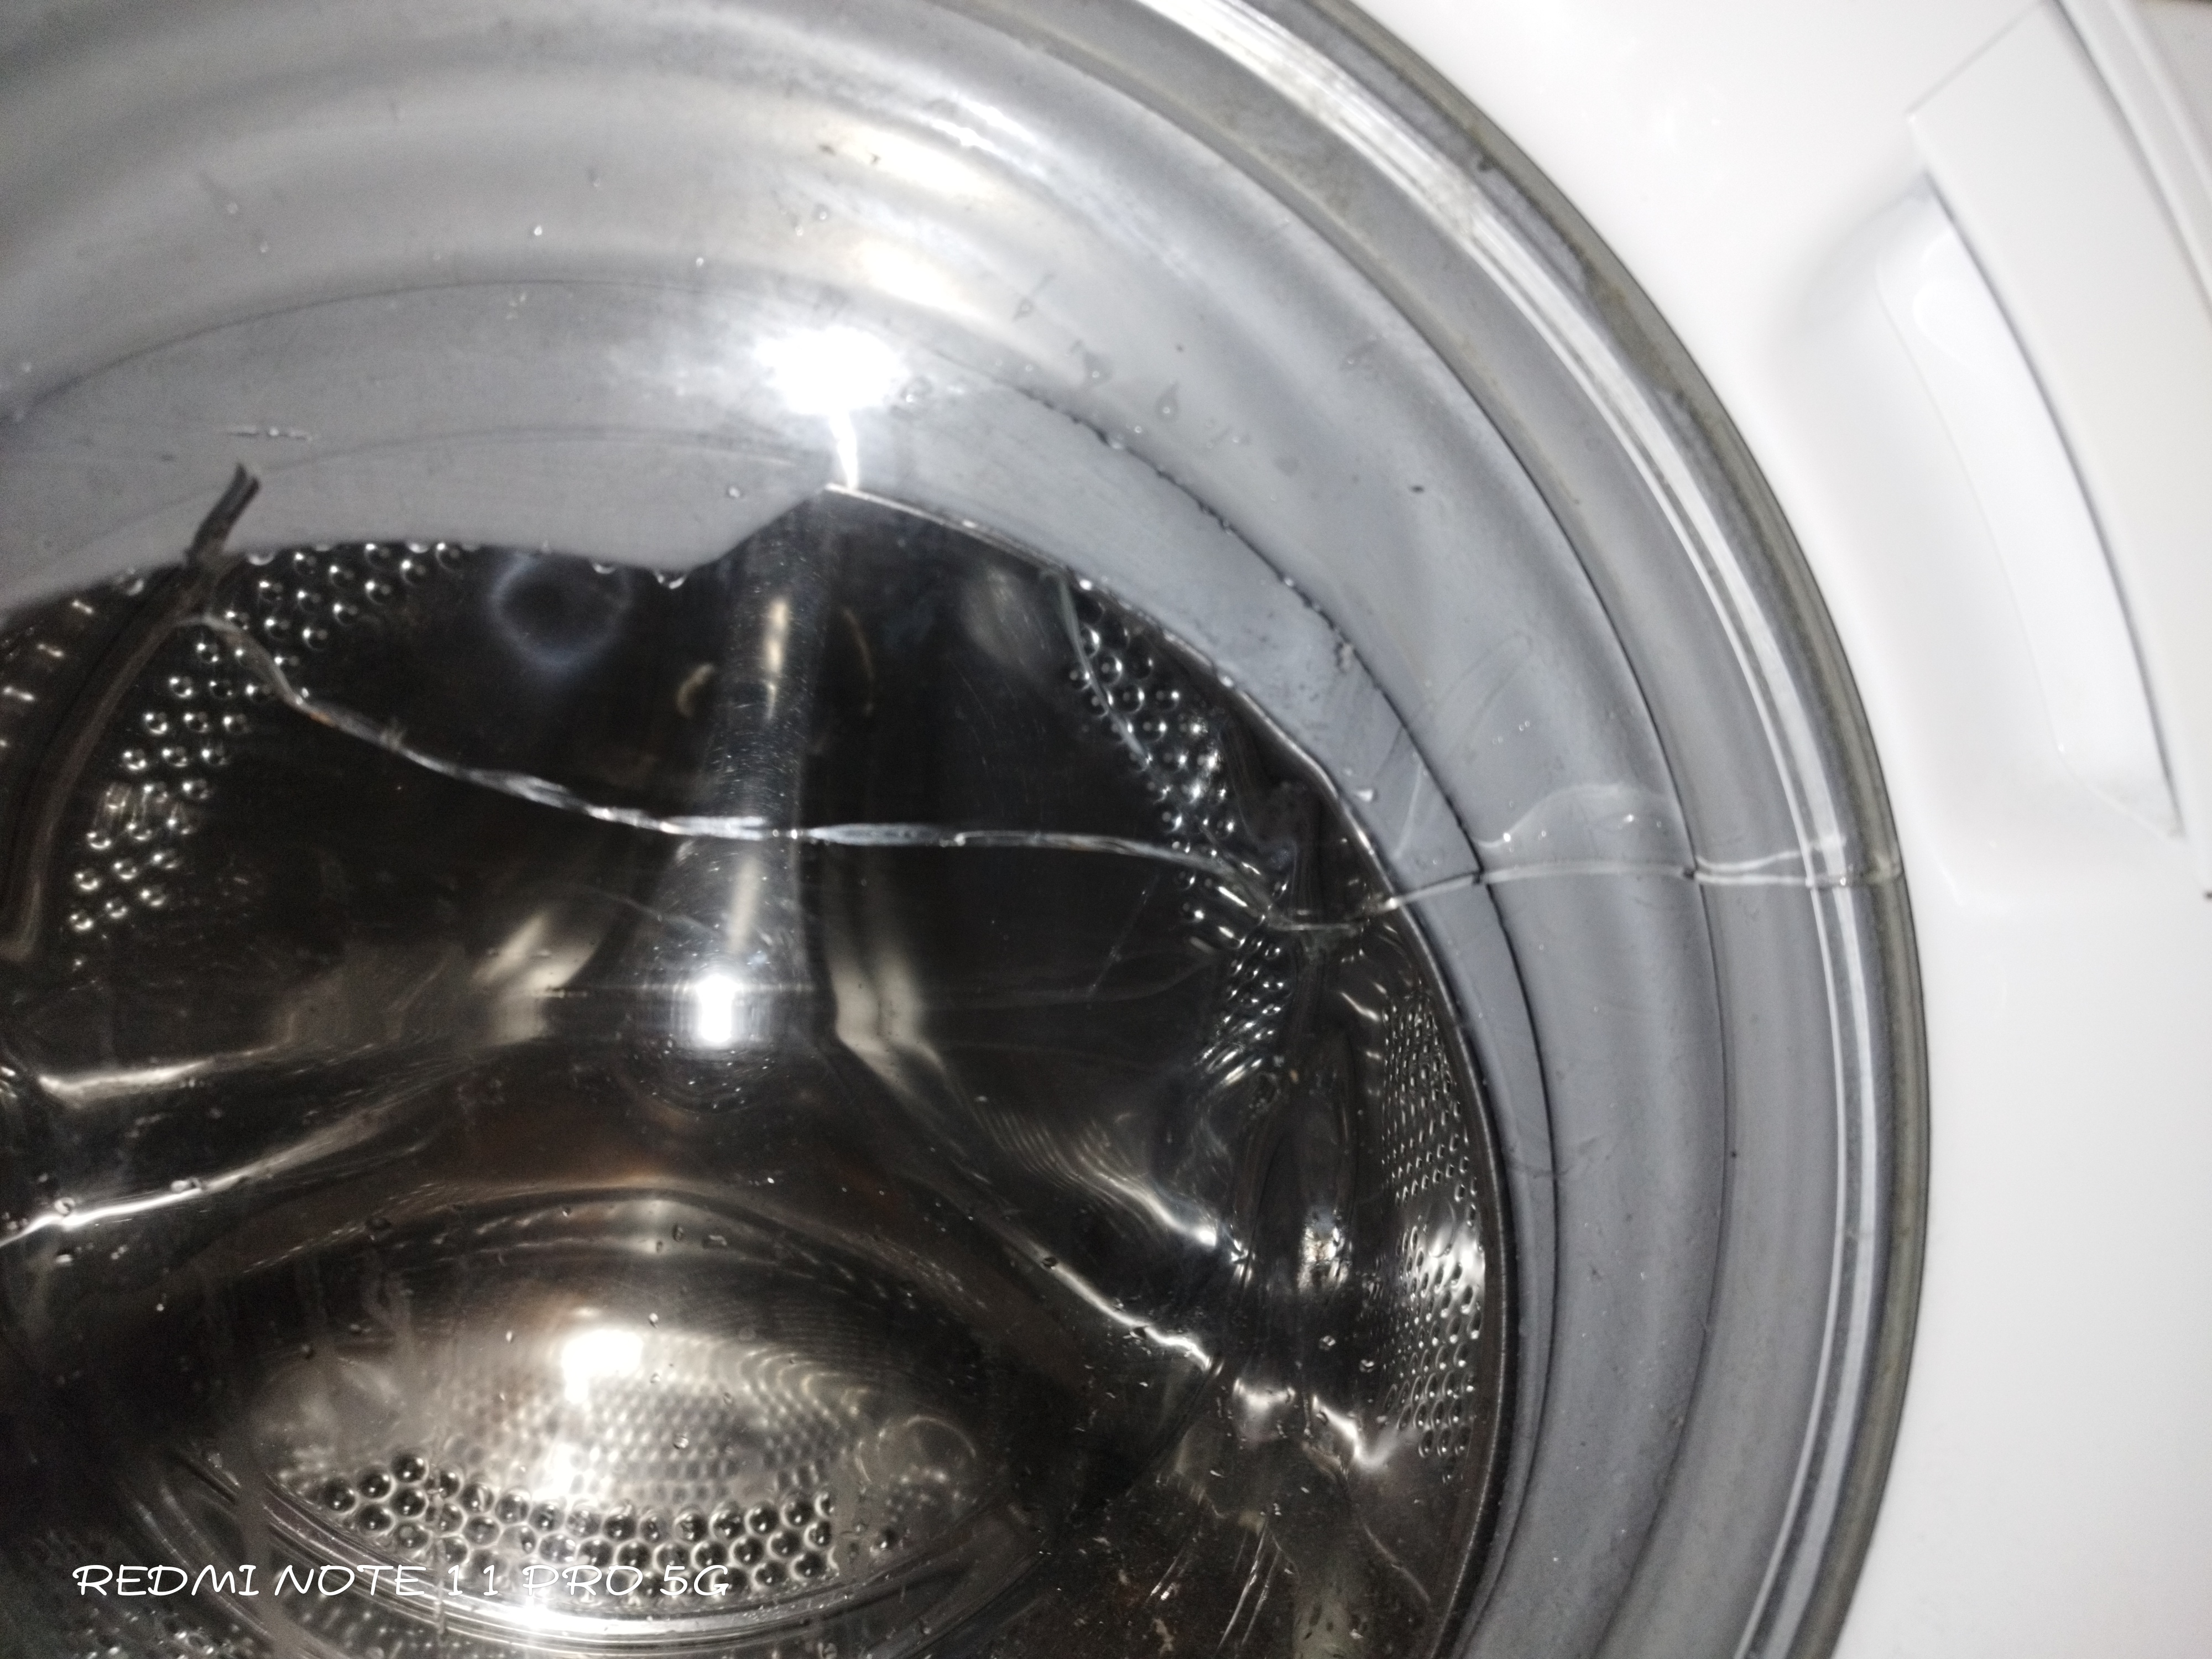 Hej, vi er meget tilfredse med denne vaskemaskine, men glasset på lågen var revnet og revnet. Hun ...